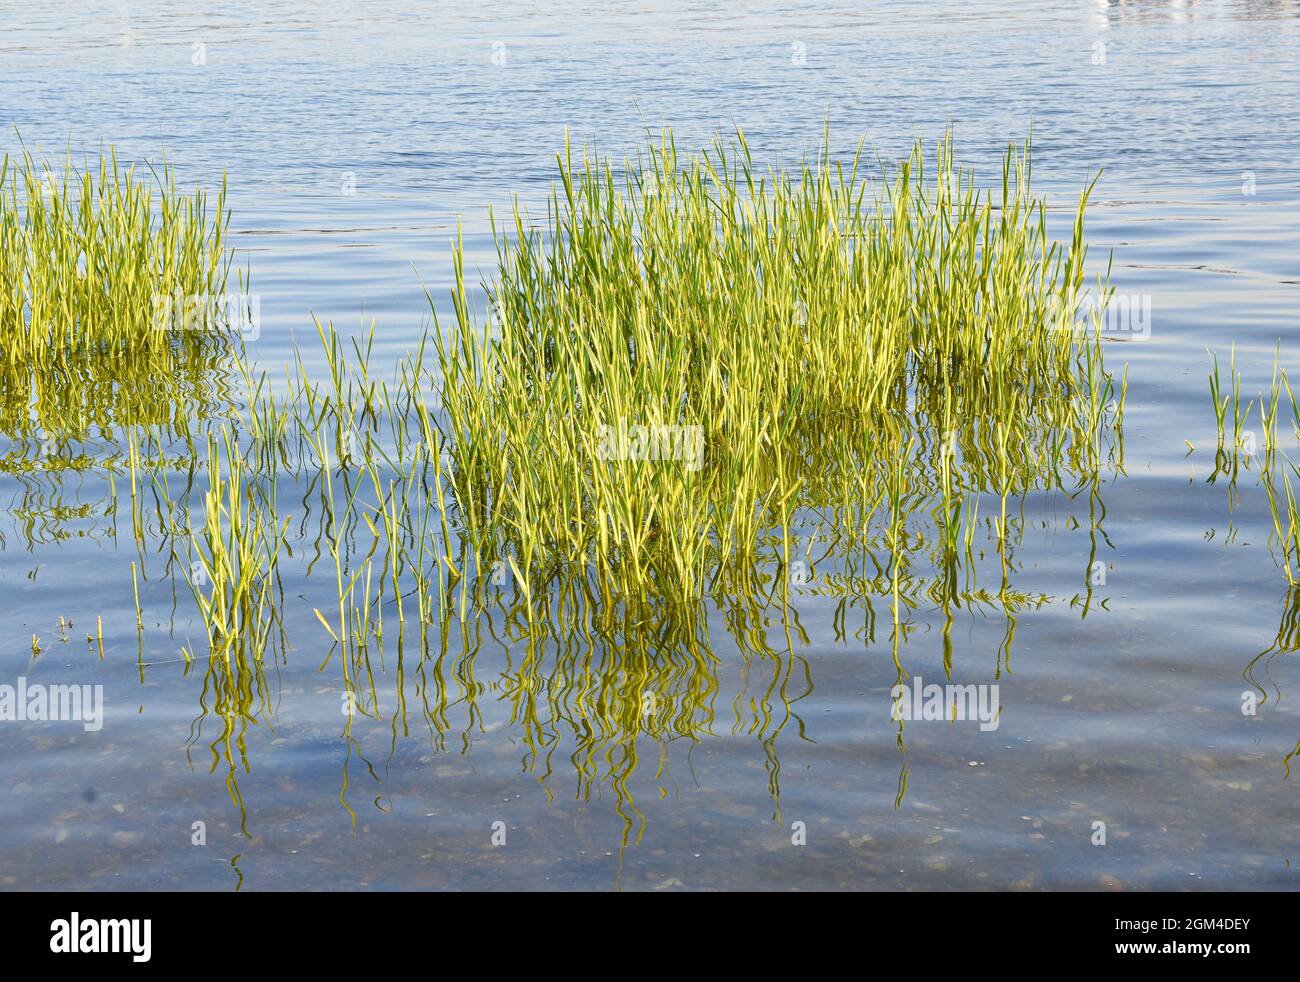 Über flachen Meeresgewässern stehen grüne Sumpfgrashaufen (Spartina alterniflora). Hintergrund. Long Island, New York. Stockfoto